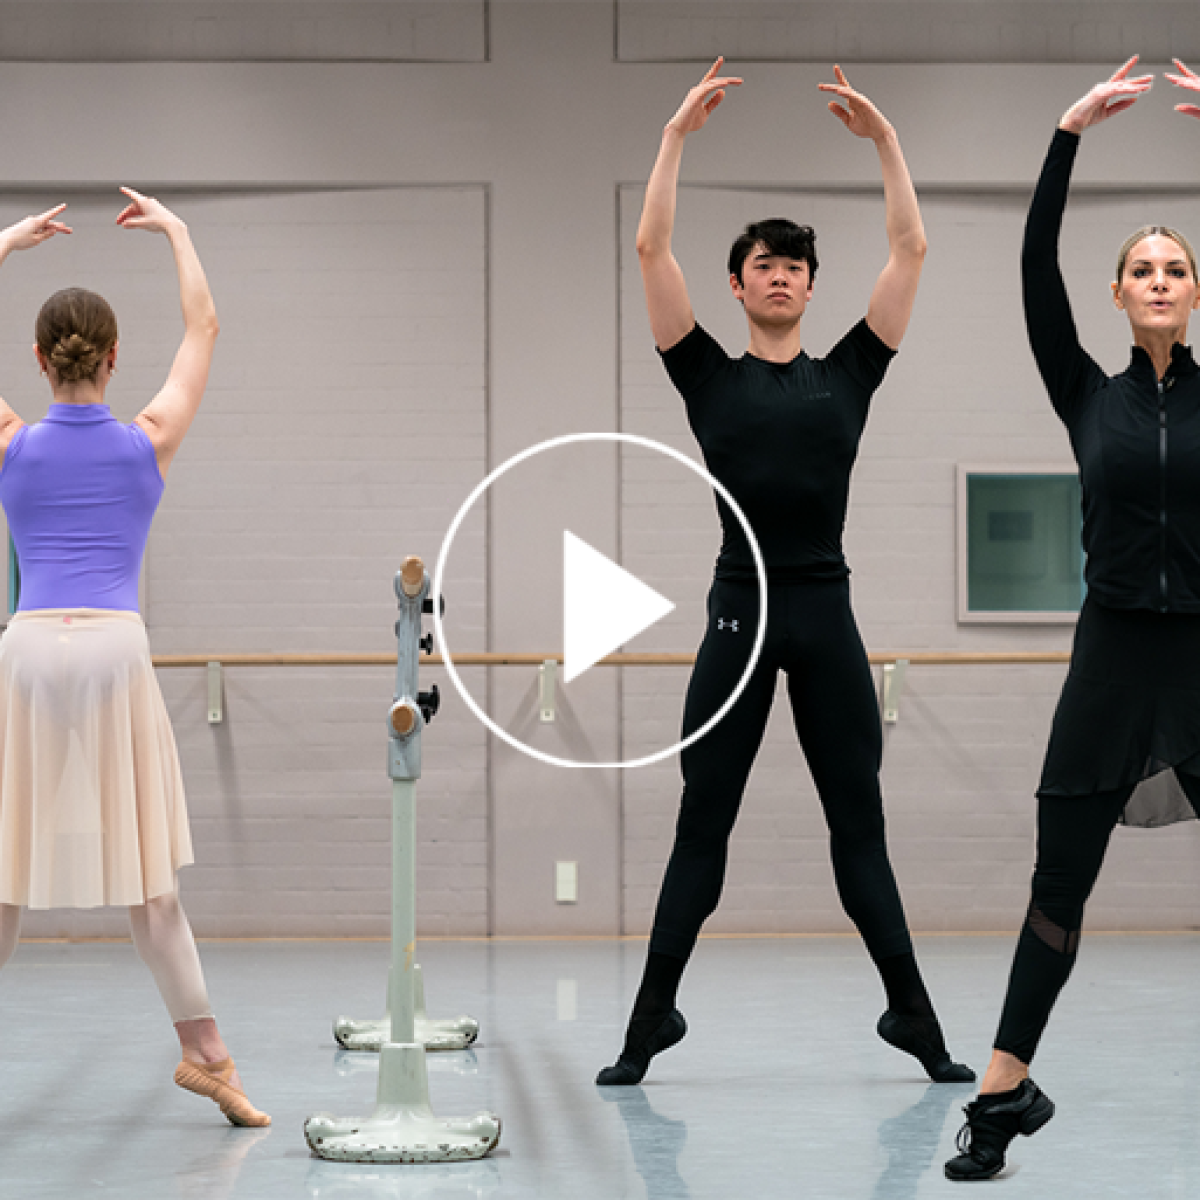 Ballet class for beginners 2 - Ballet Barre